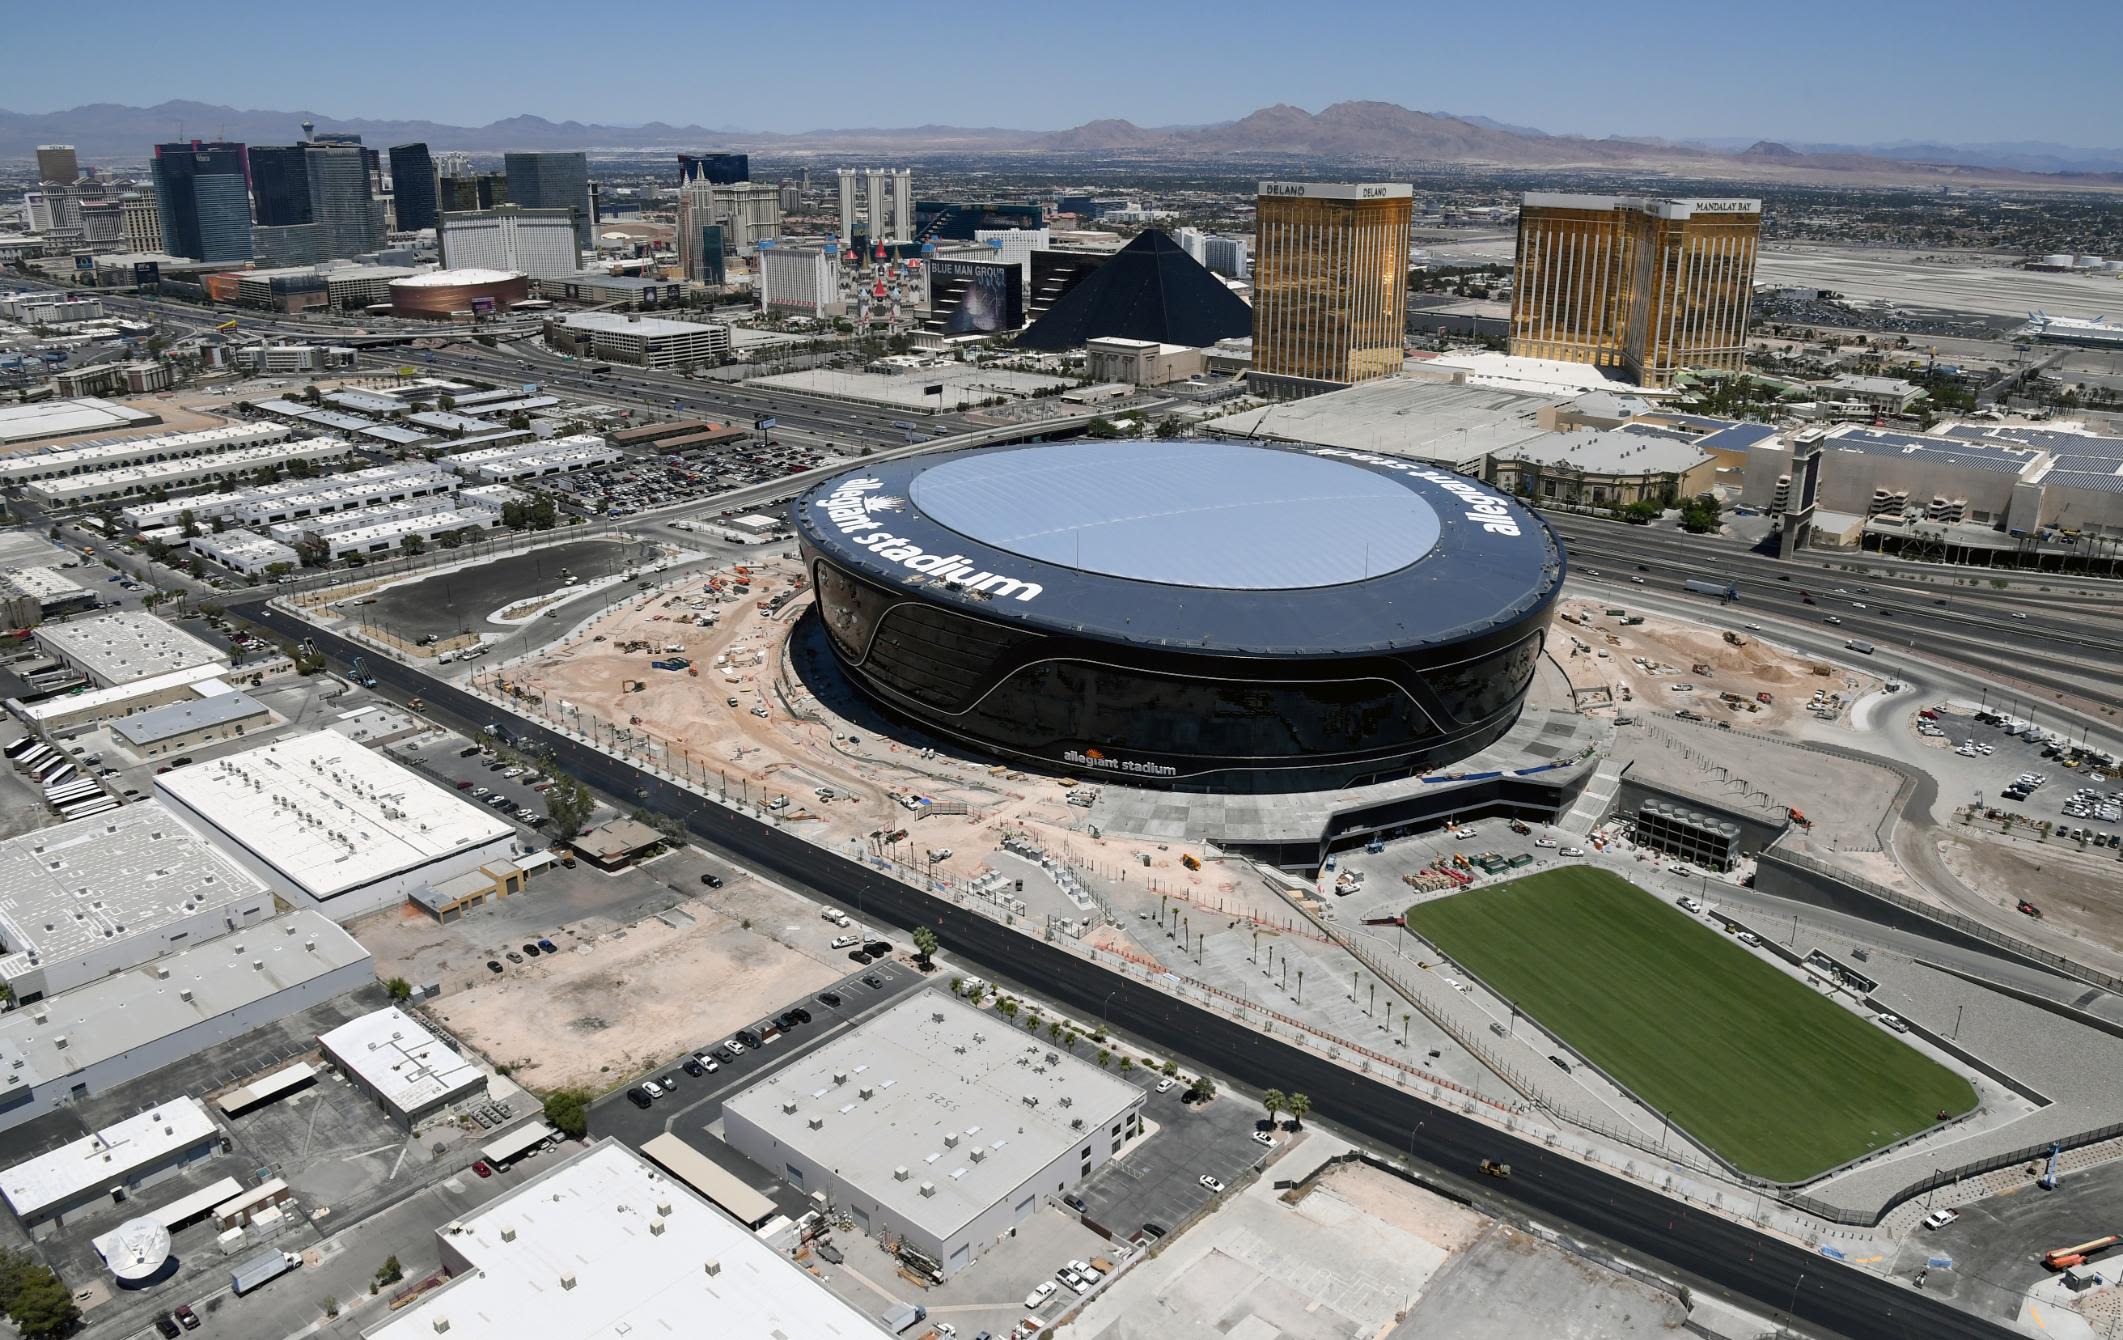 Allegiant Stadium in Las Vegas will host Super Bowl LVIII in 2024